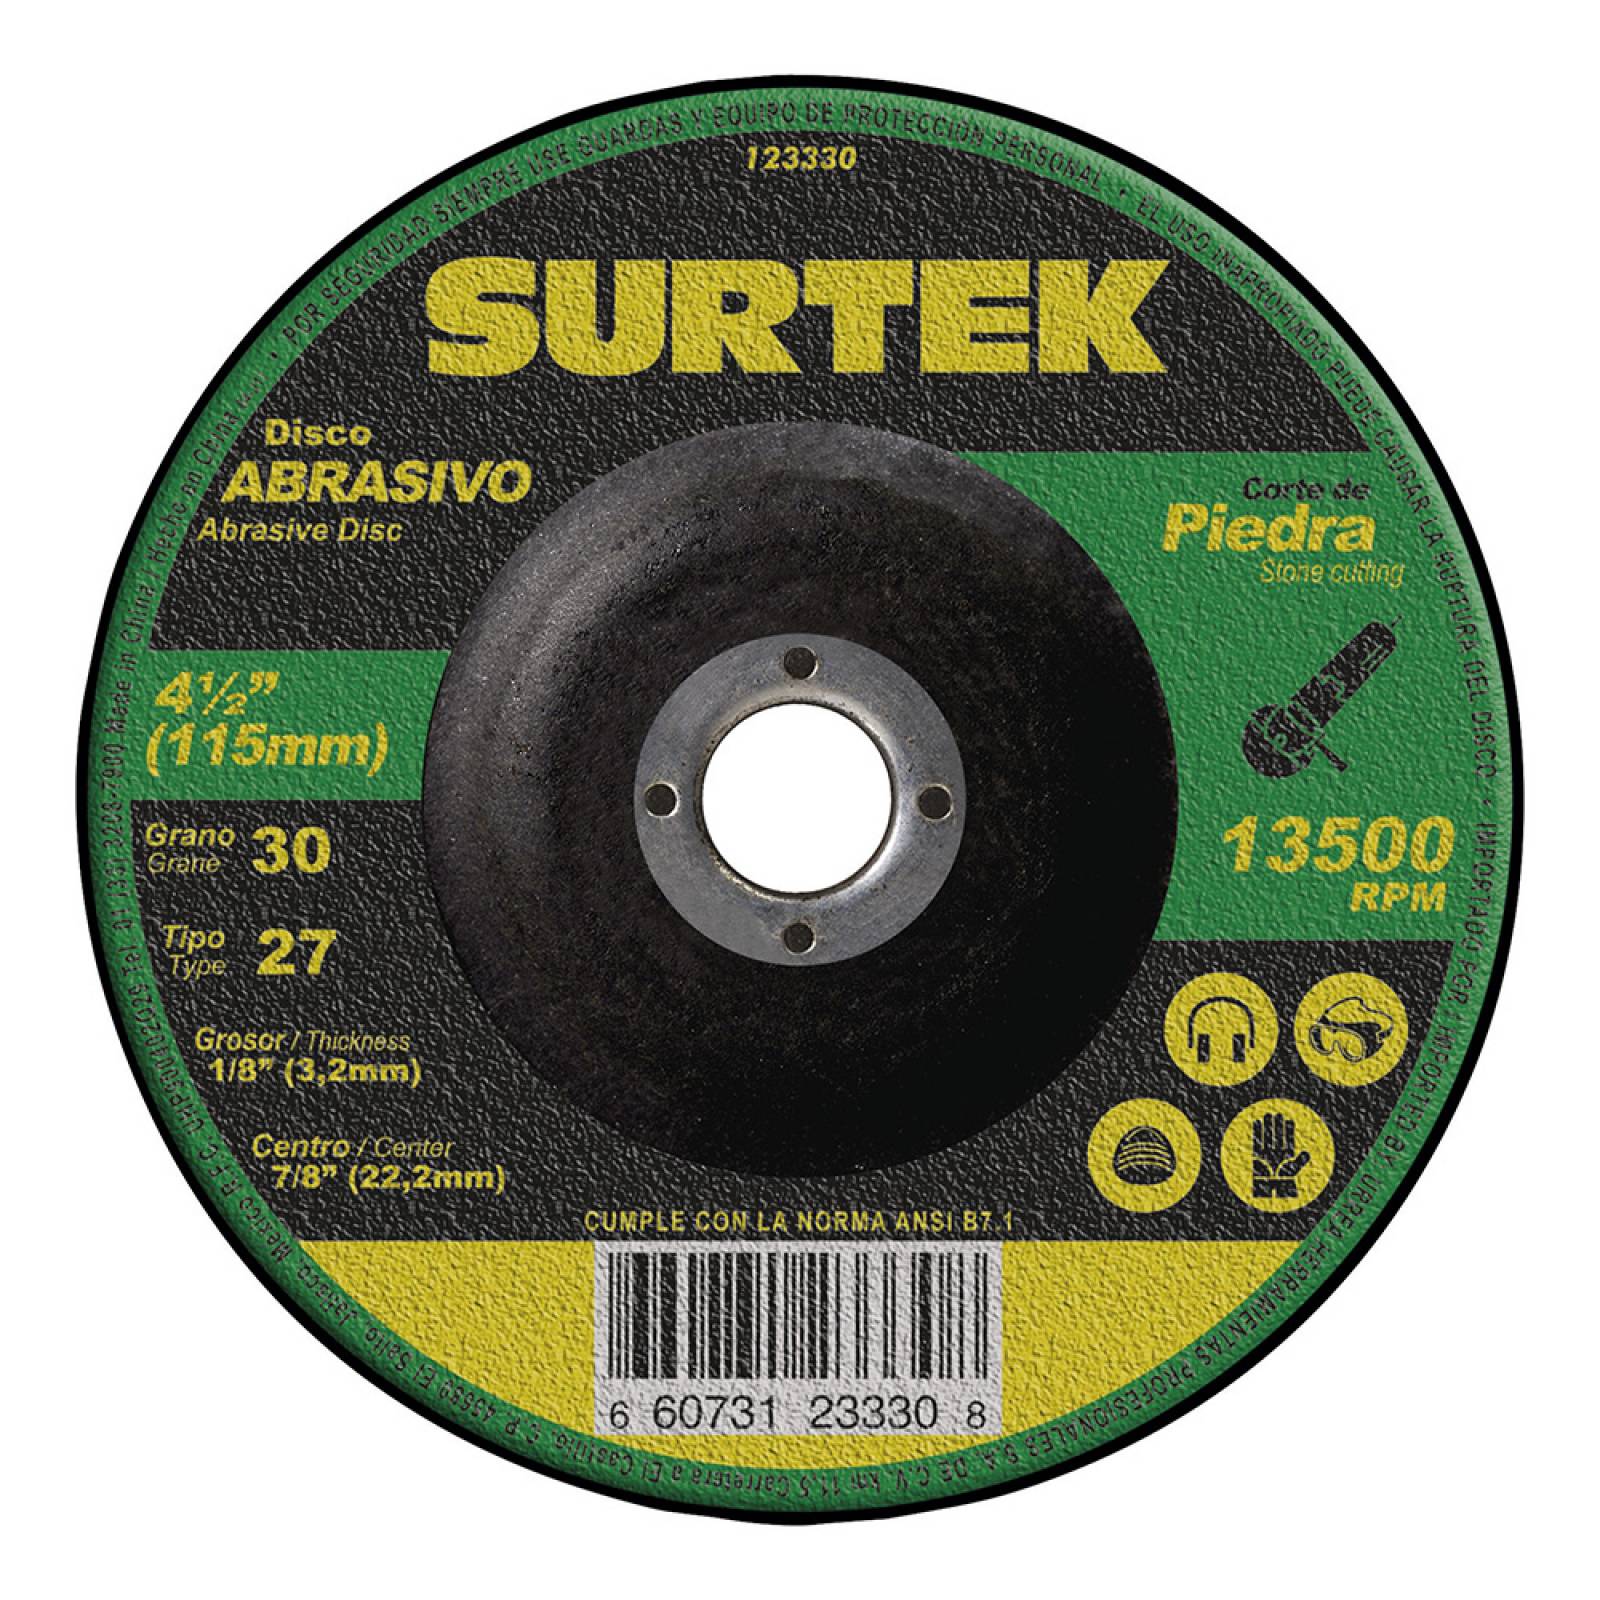 Disco T/27 Piedra 4-1/2x1/8 Pulgadas 123330 Surtek 